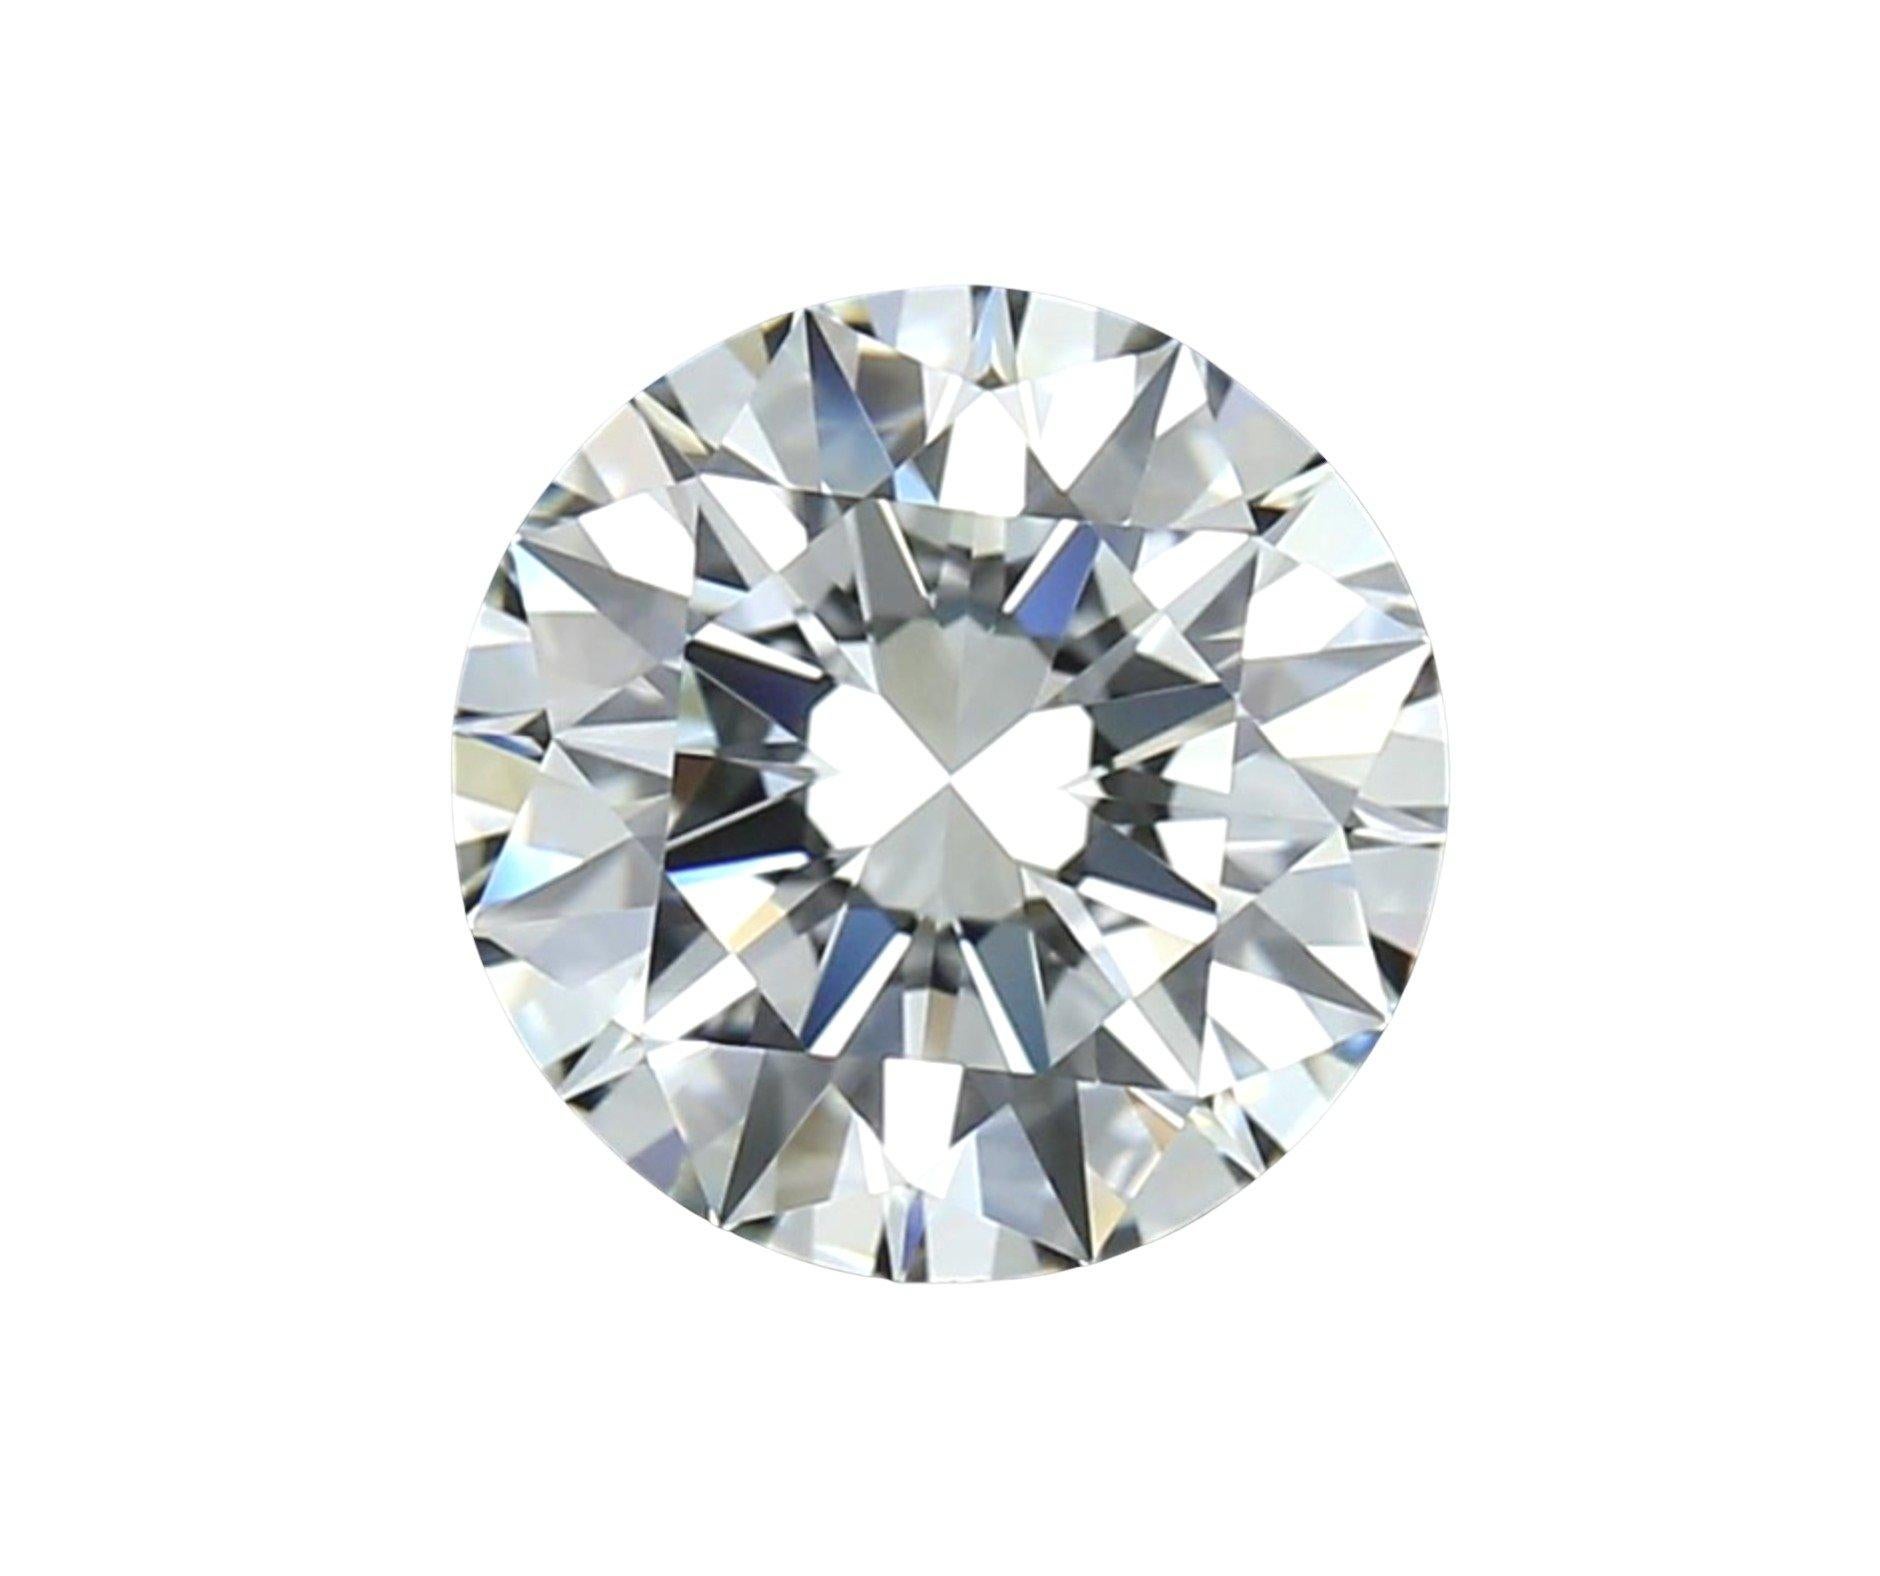 Brillant diamant rond de taille naturelle de 1,03 carat I VVS1 AVEC une excellente taille IDEAL.
Ce diamant est accompagné d'un certificat GIA et d'un numéro d'inscription au laser.
EXTRÊMEMENT ÉTINCELANTE

SKU : C-DSPV-167351-6
GIA 2454135801